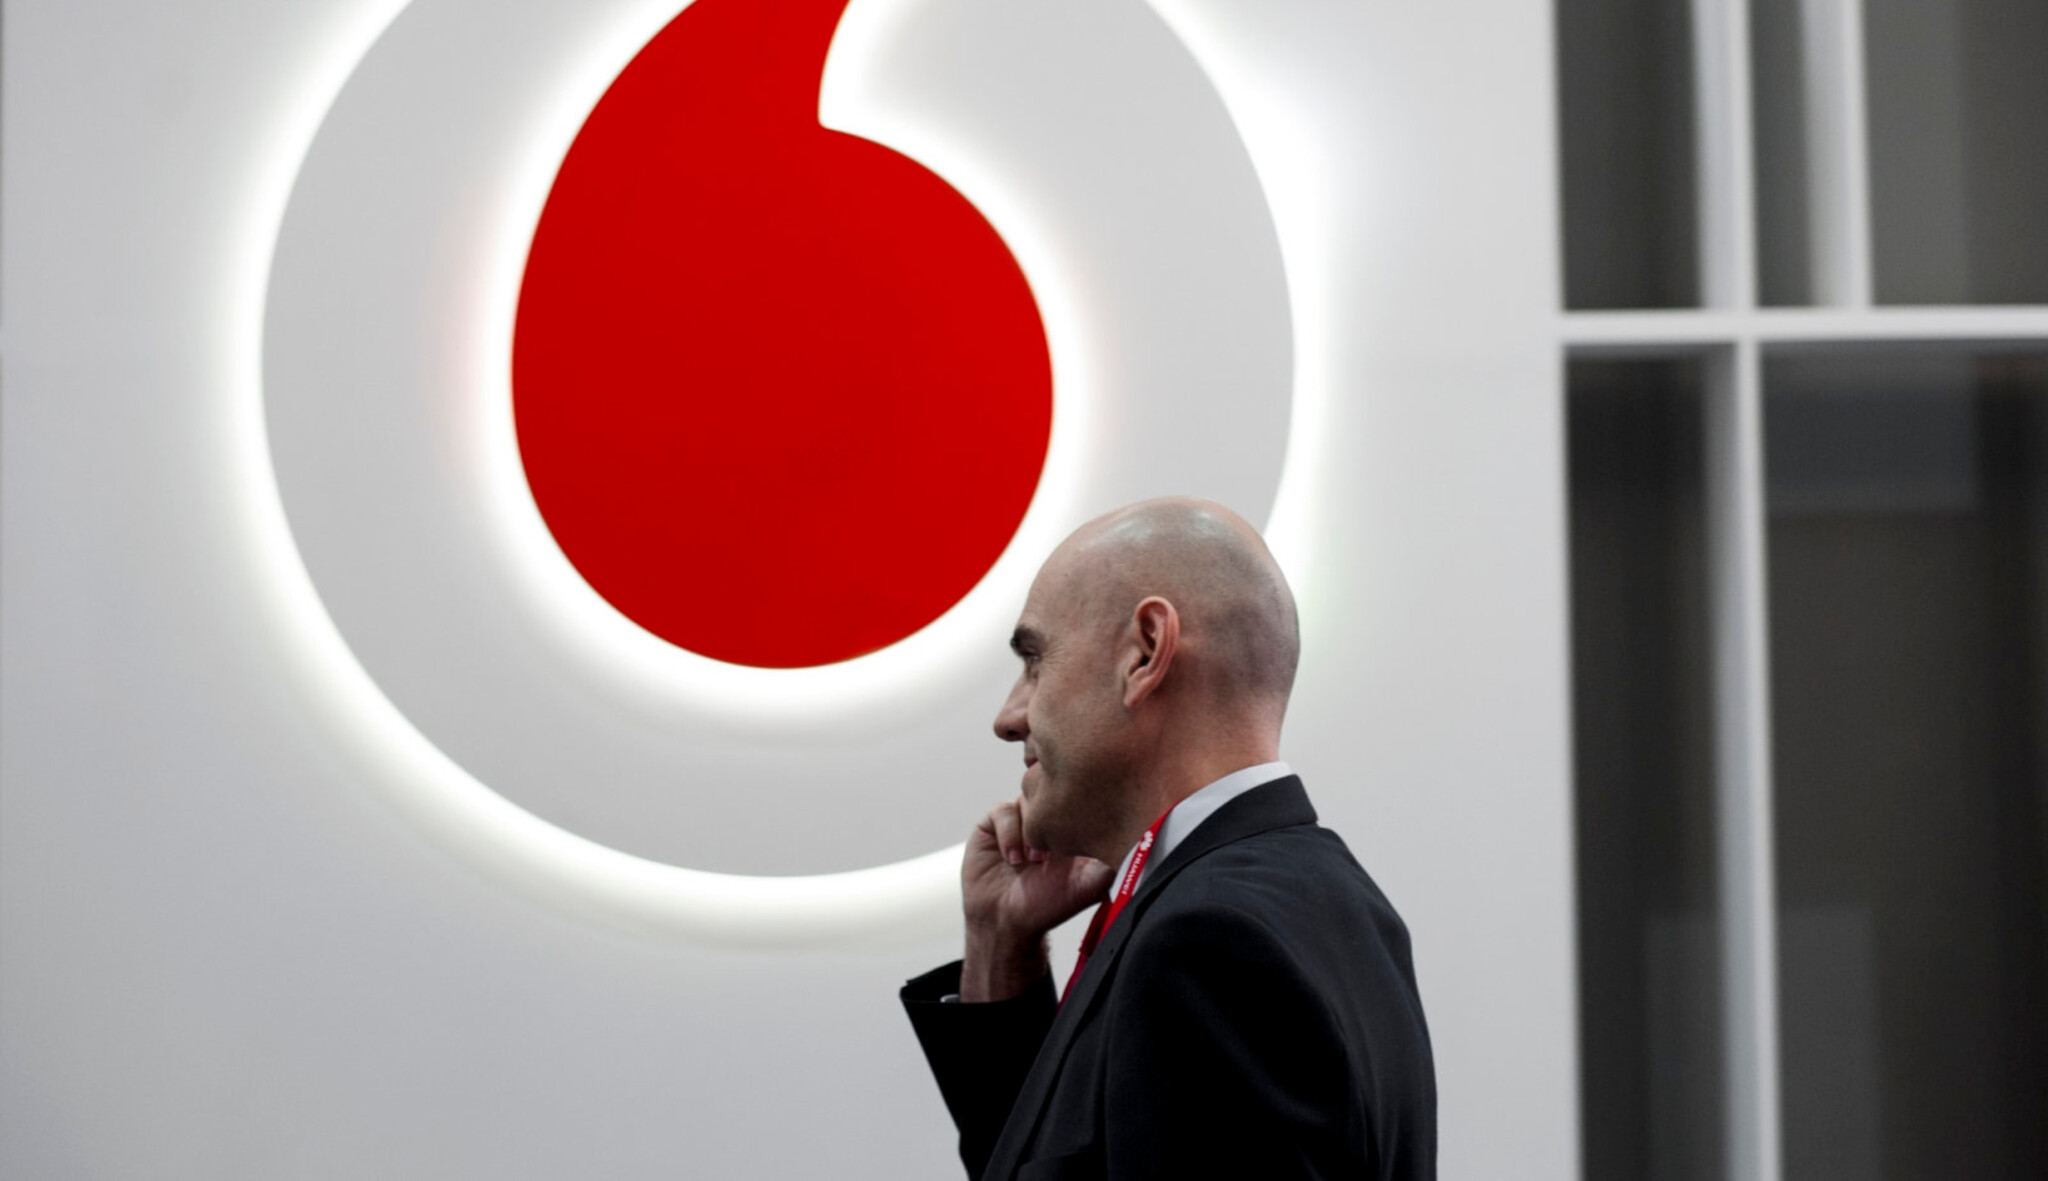 Nedostatečný výkon. Vodafone bude rušit jedenáct tisíc pracovních míst